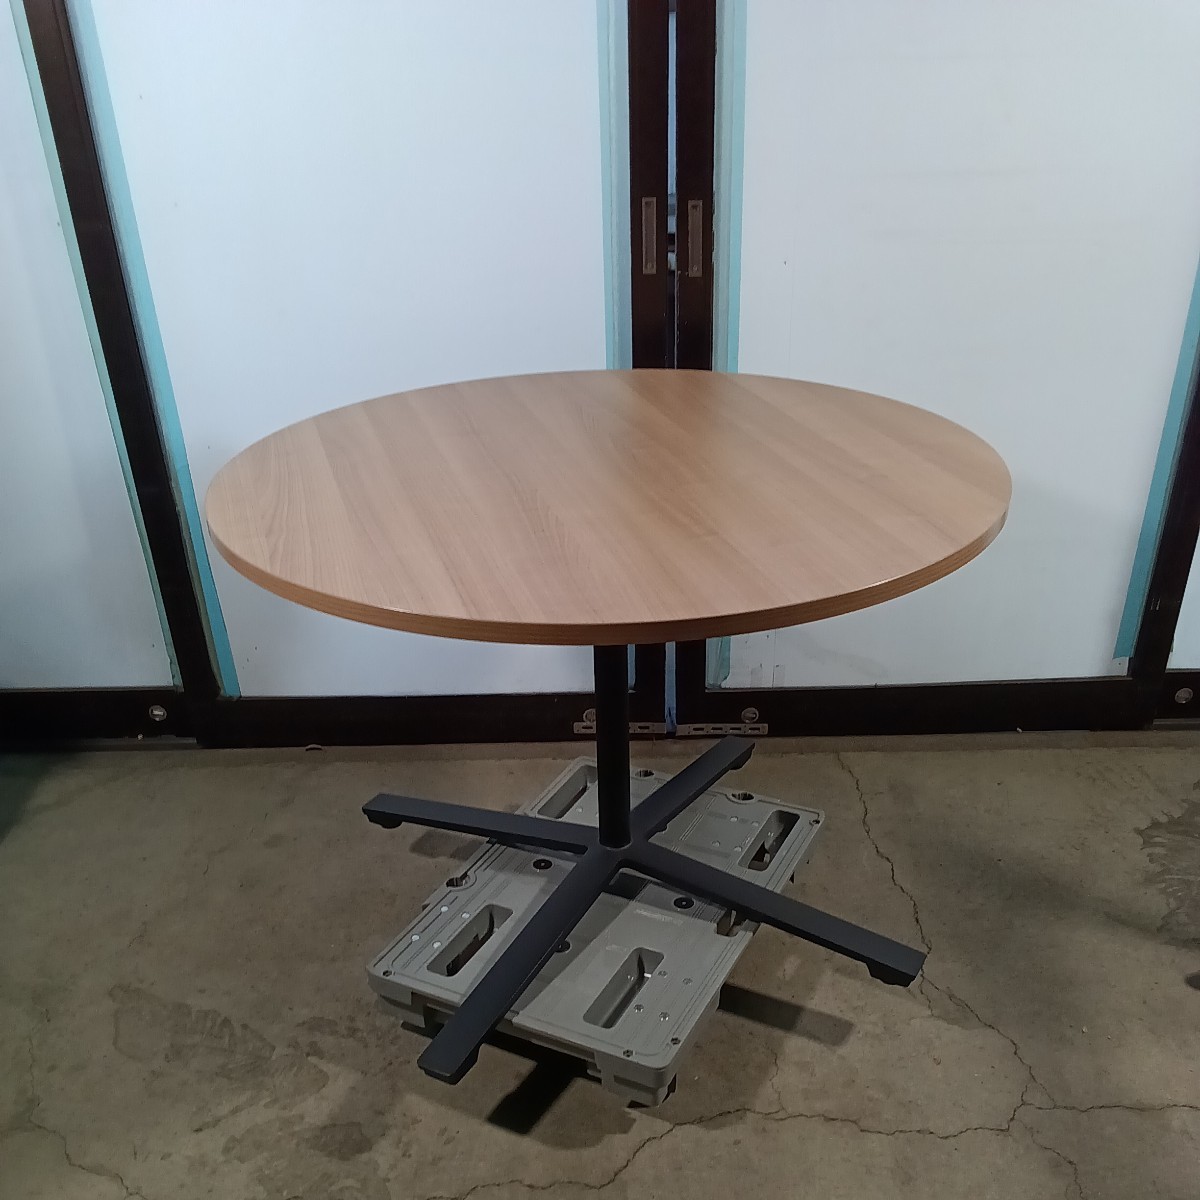  из дерева настольный круг стол φ1050h720kokyo2019 год производства ①mi-ting стол 